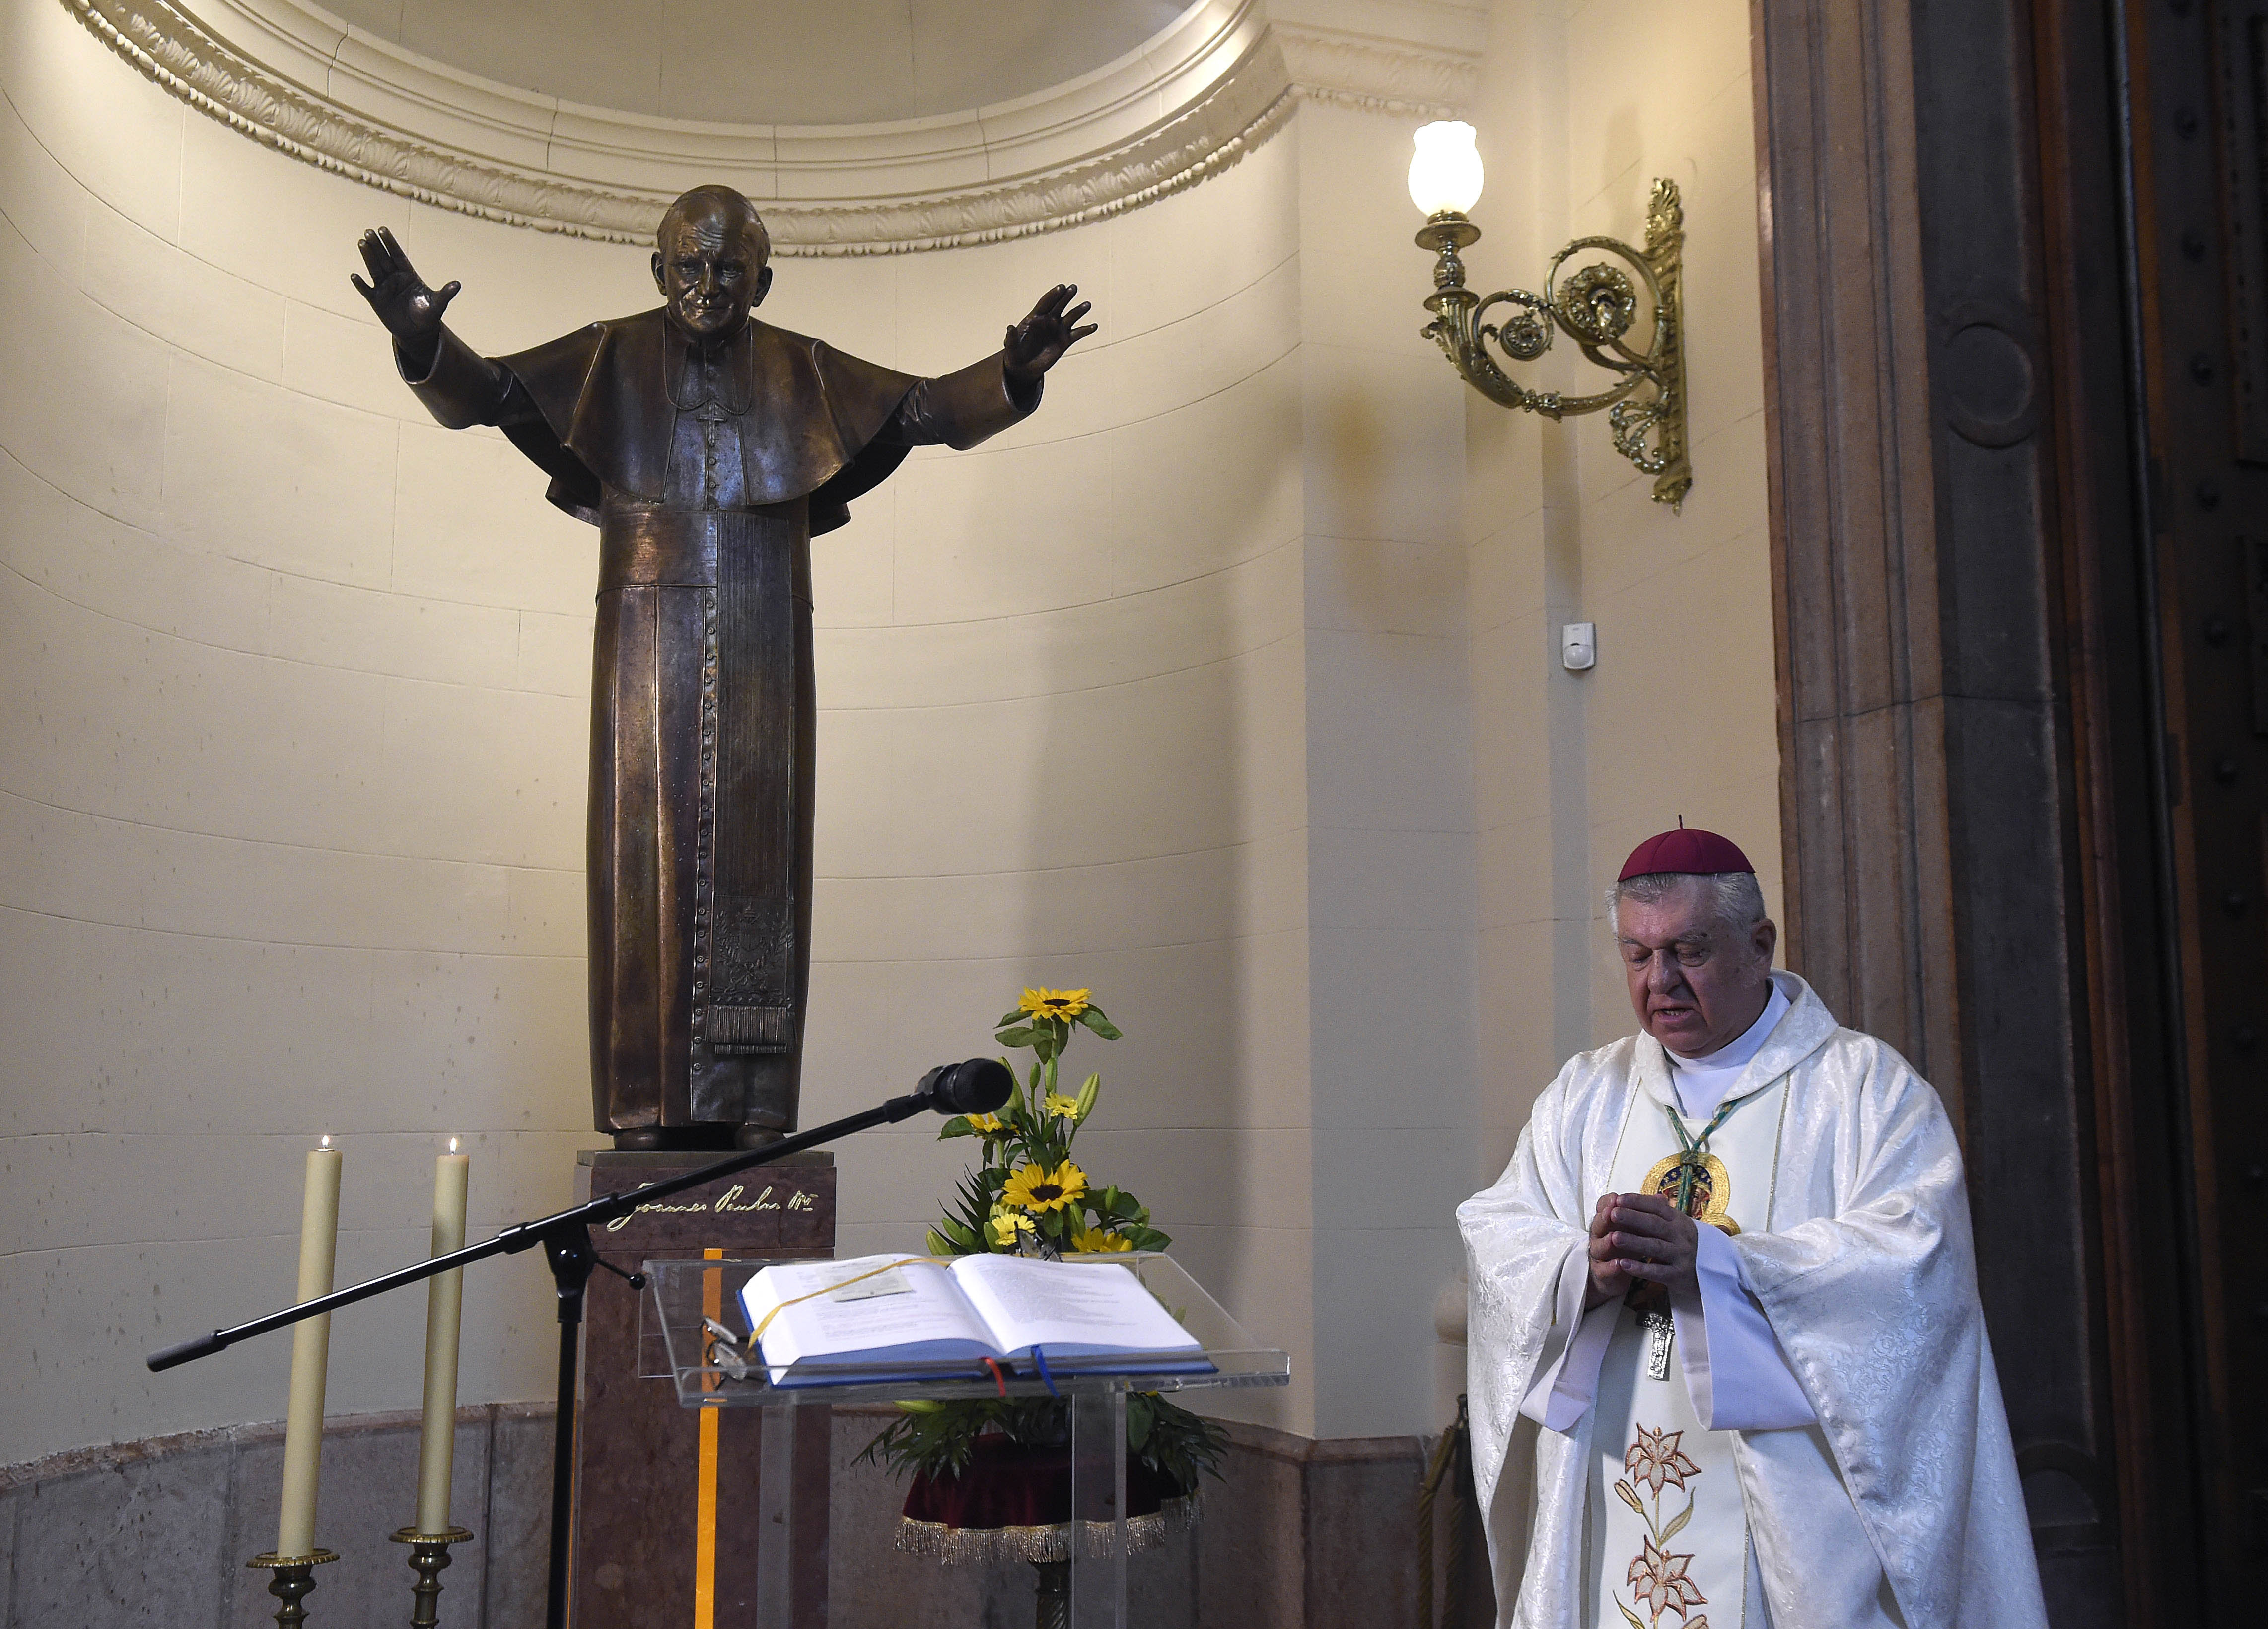 Snell György esztergom-budapesti segédpüspök, a Szent István-bazilika plébánosa megáldja a Szent II. János Pál pápa életnagyságú szobrát a főtemplom papi bejárójánál 2020. május 18-án.